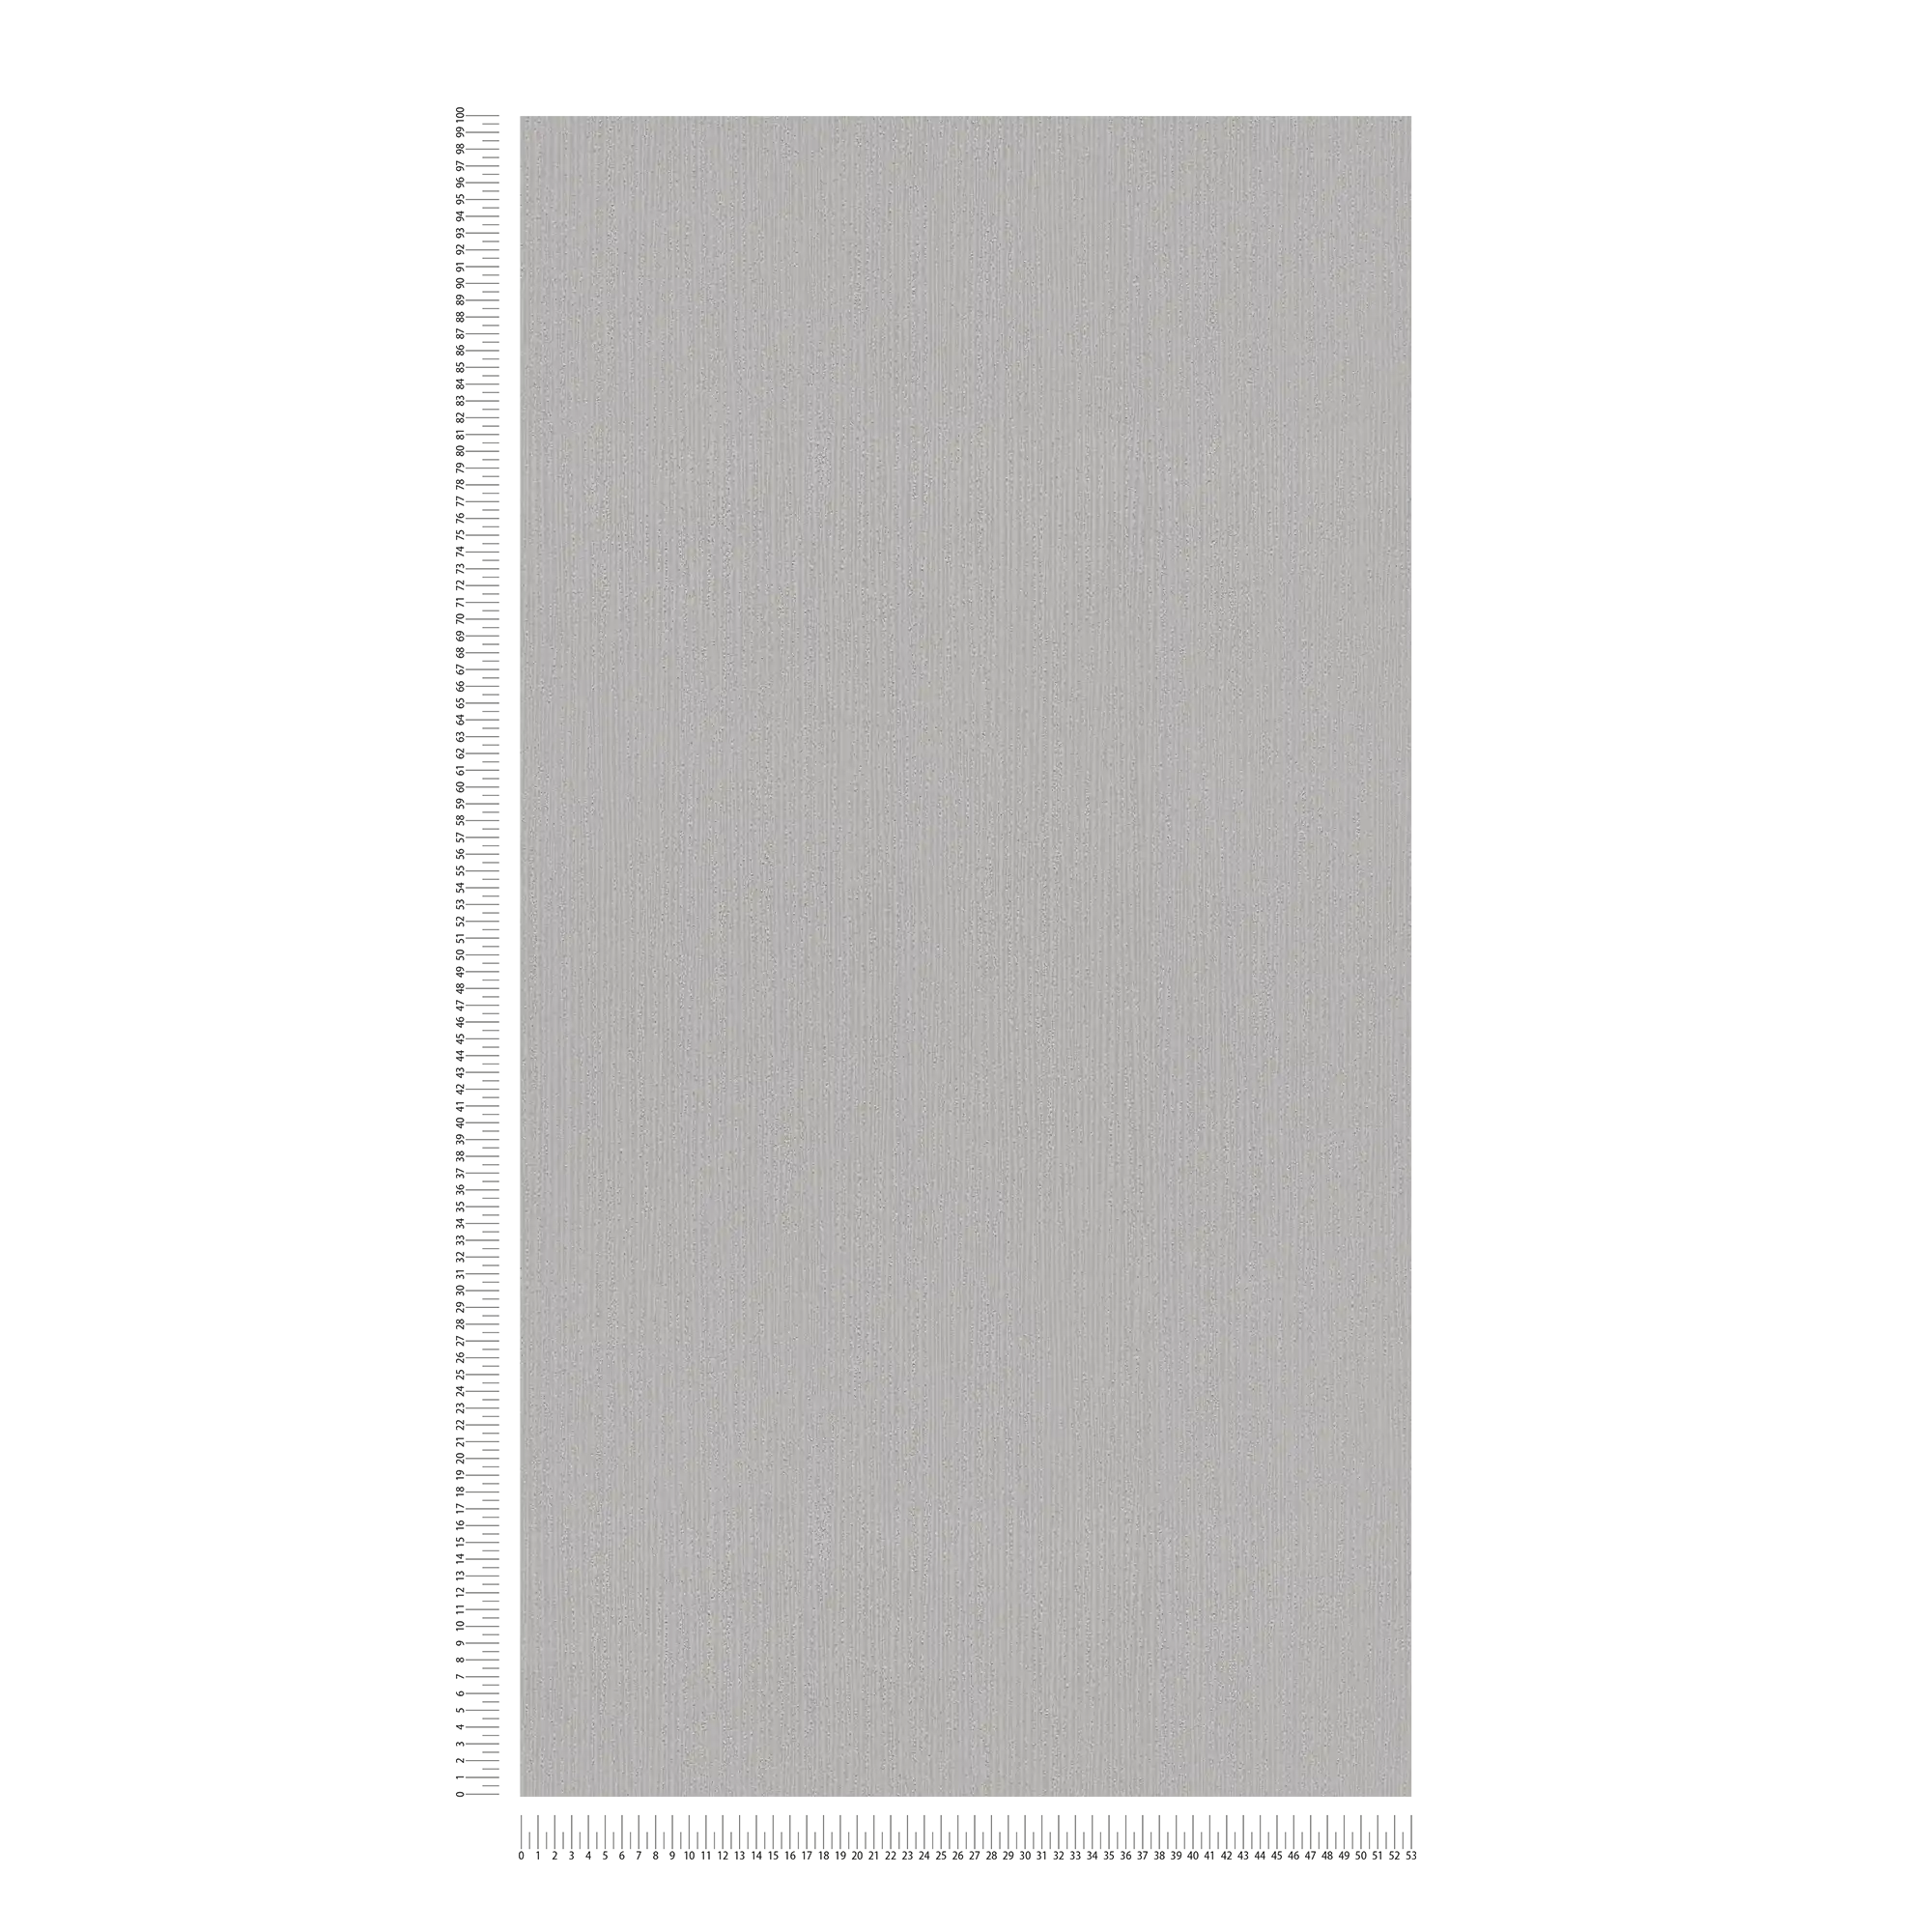             Carta da parati strutturata grigio chiaro con motivo a trama tono su tono, grigio satinato
        